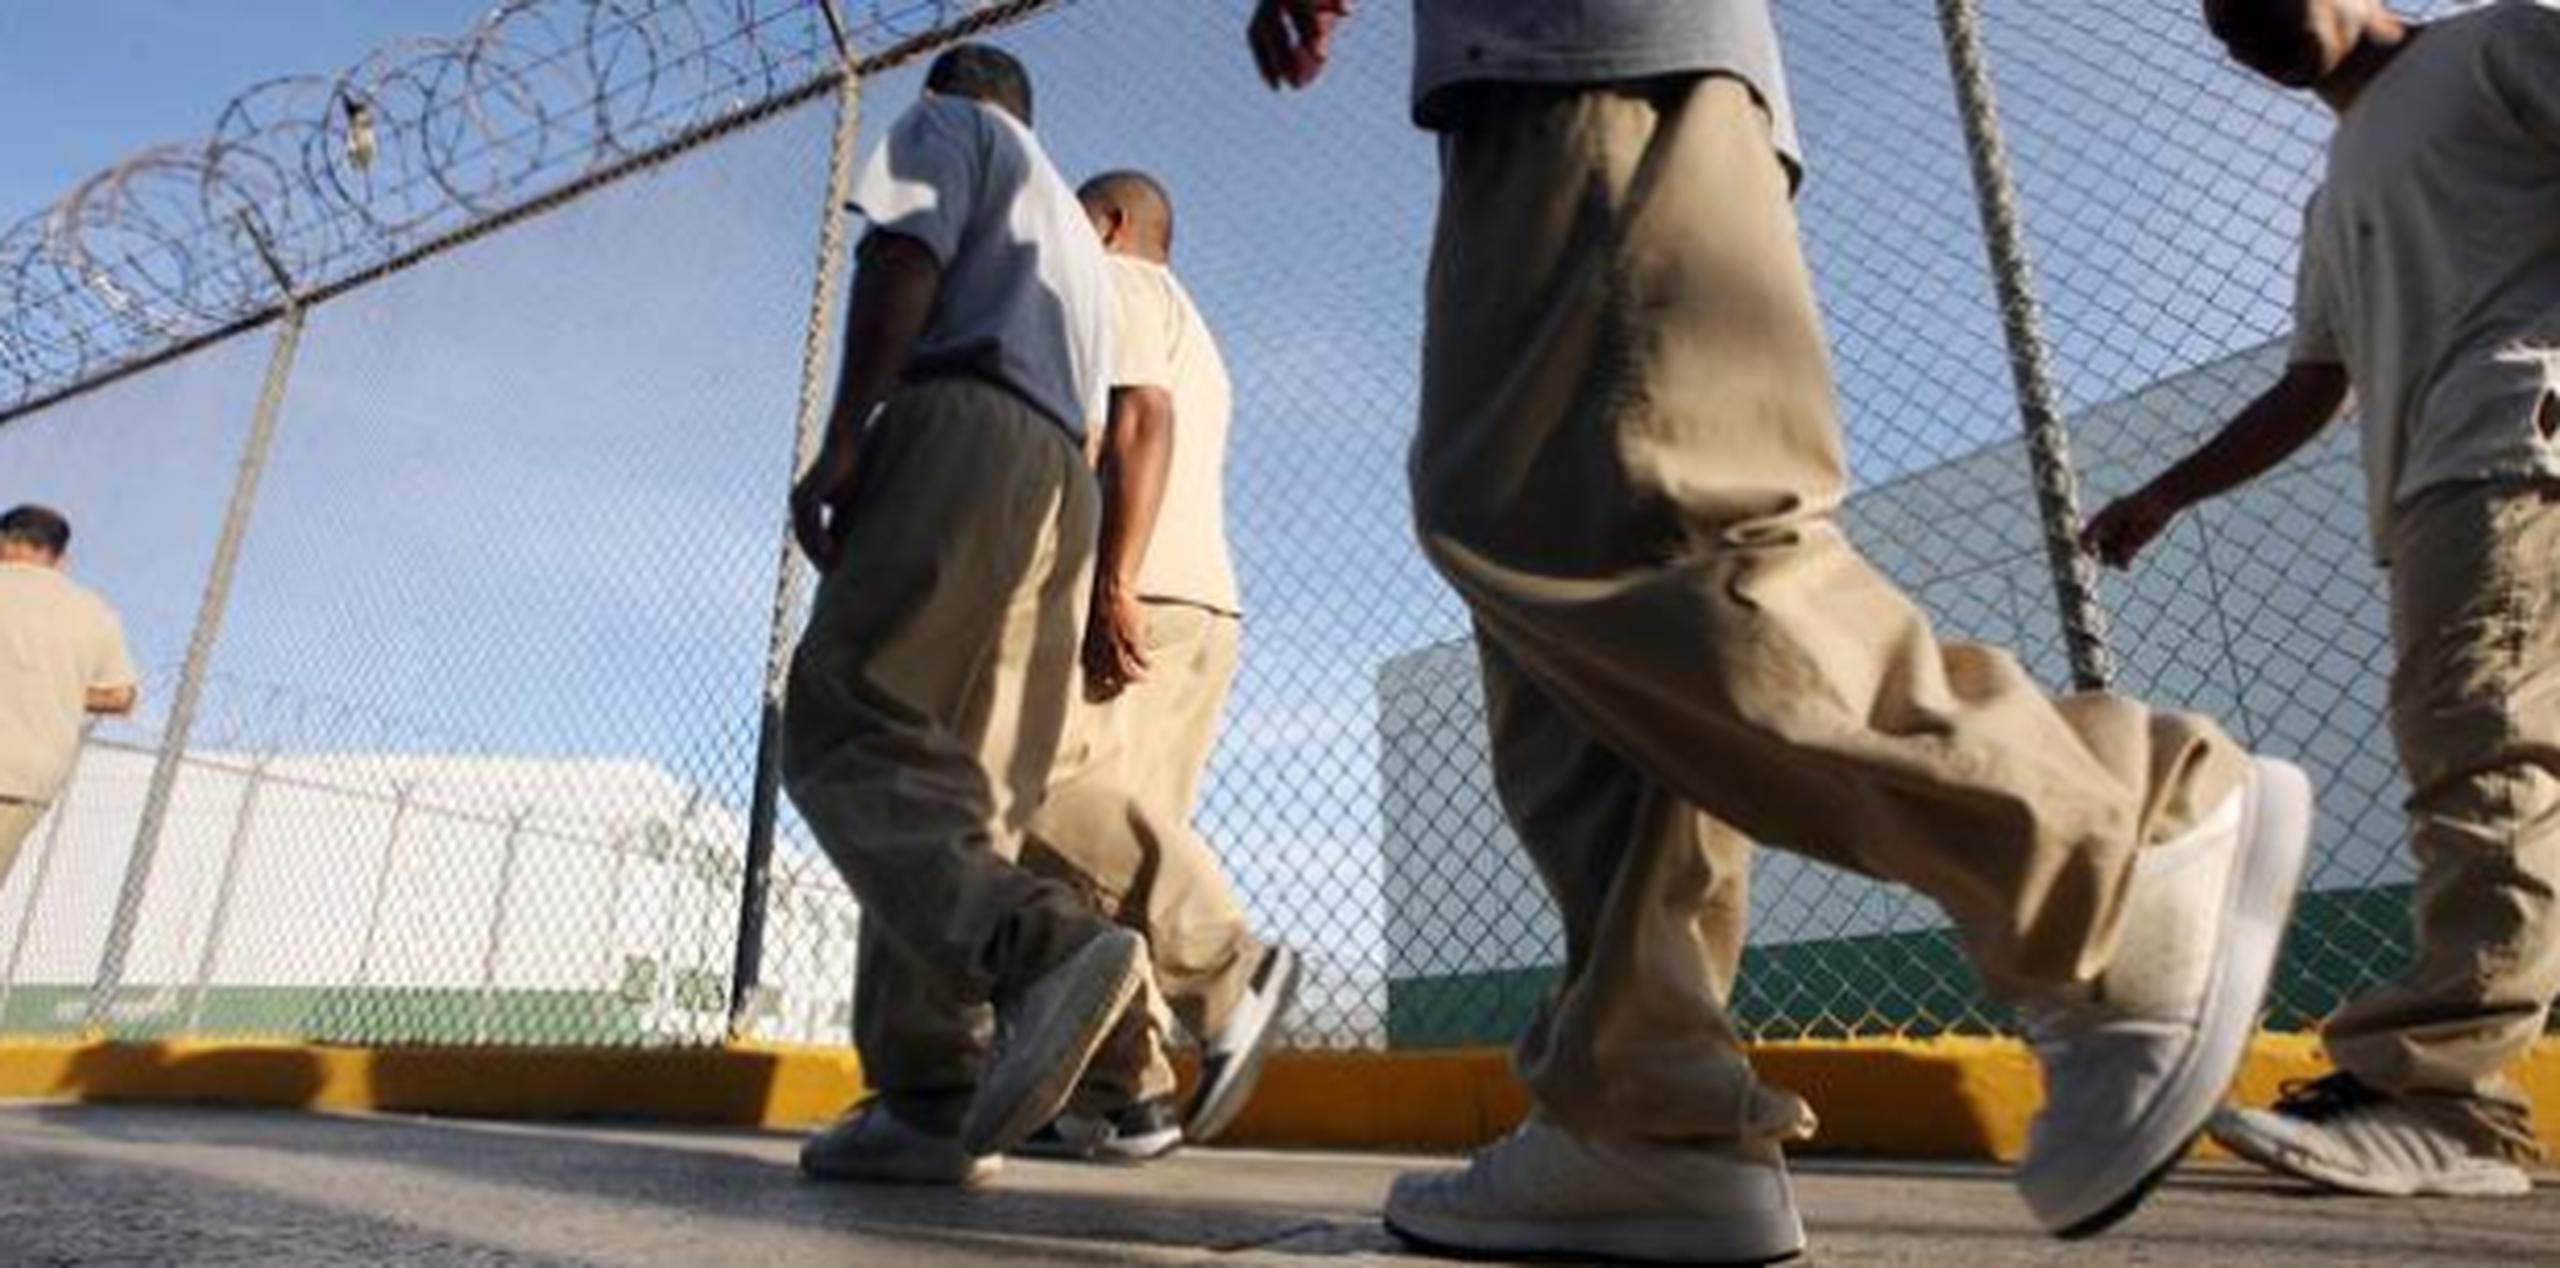 La decisión del Tribunal Supremo federal podría tener efecto a la excarcelación de presos. (Archivo)